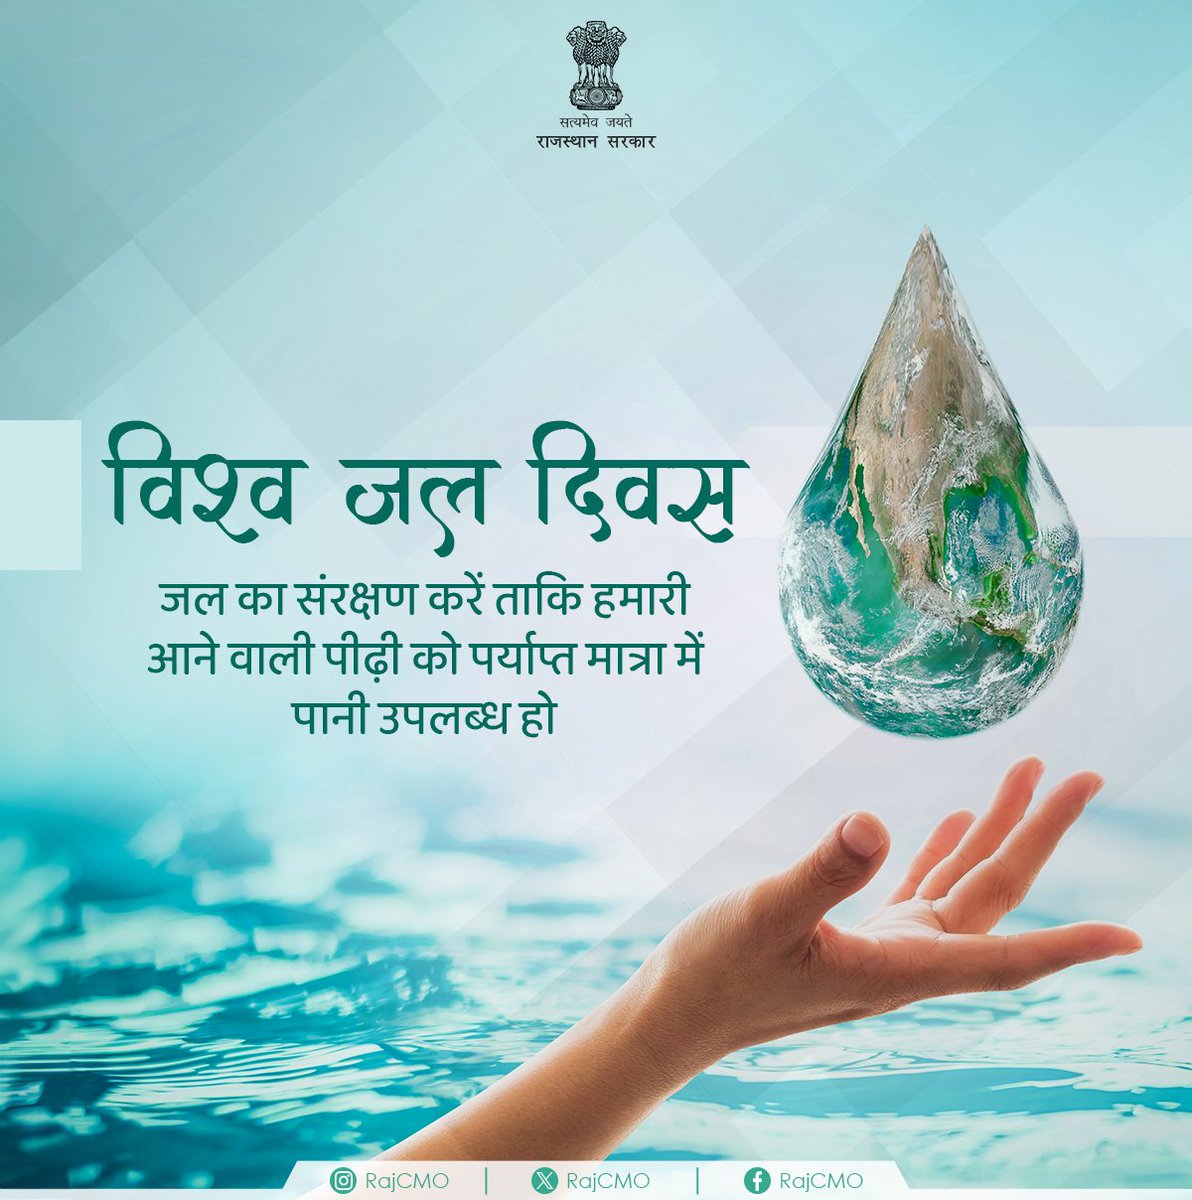 जल सभी प्राणियों के लिए आवश्यक है। सभी मिलकर जल का संरक्षण करें ताकि हमारी आने वाली पीढ़ी को पर्याप्त मात्रा में पानी उपलब्ध हो। #RajCMO #CMORajasthan